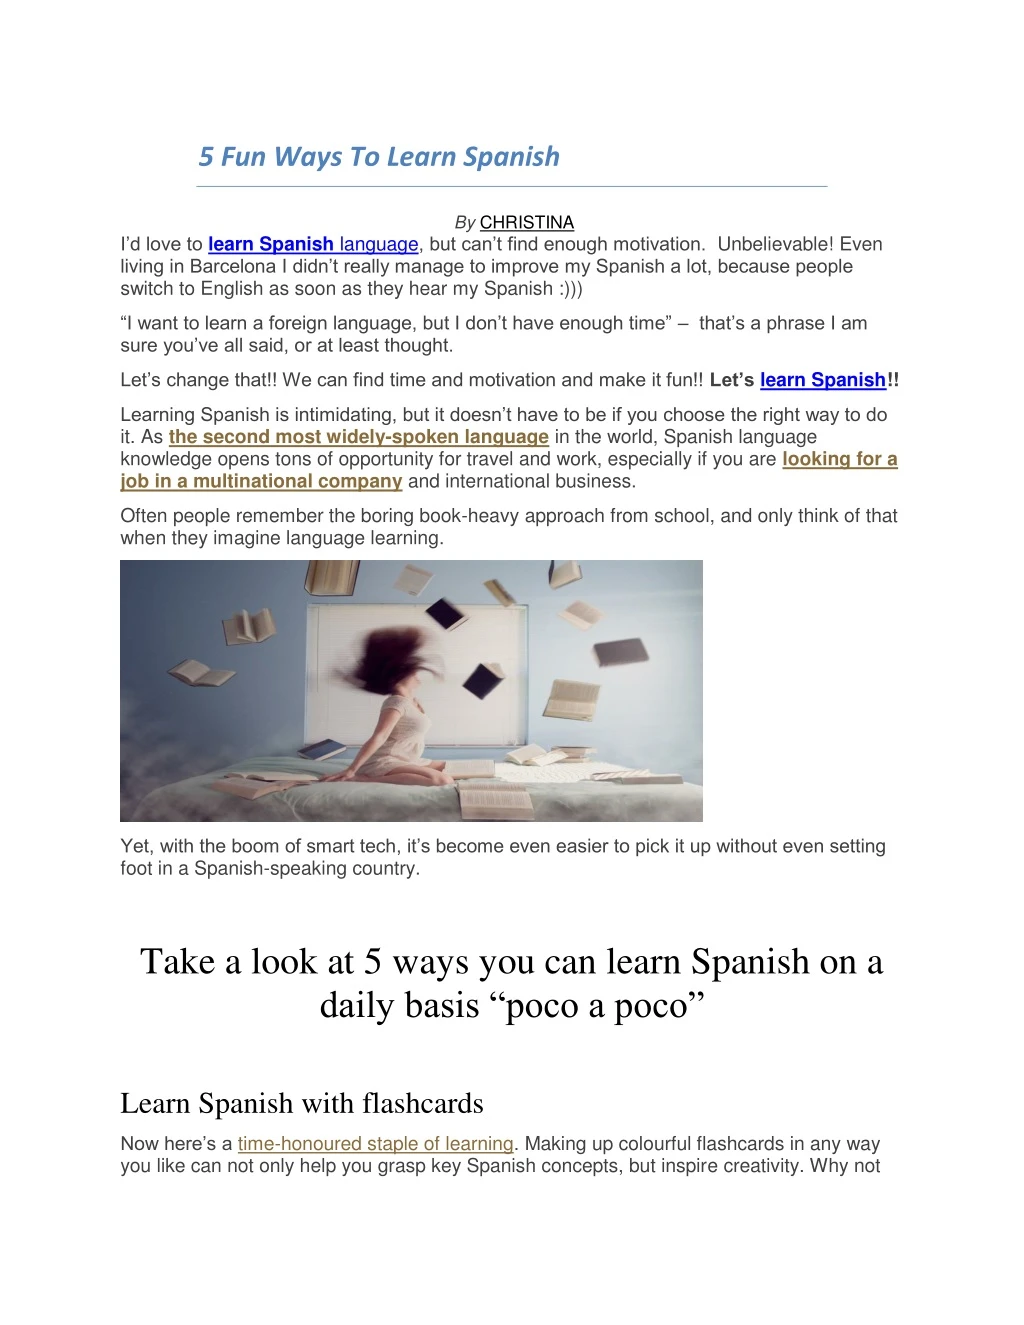 5 fun ways to learn spanish